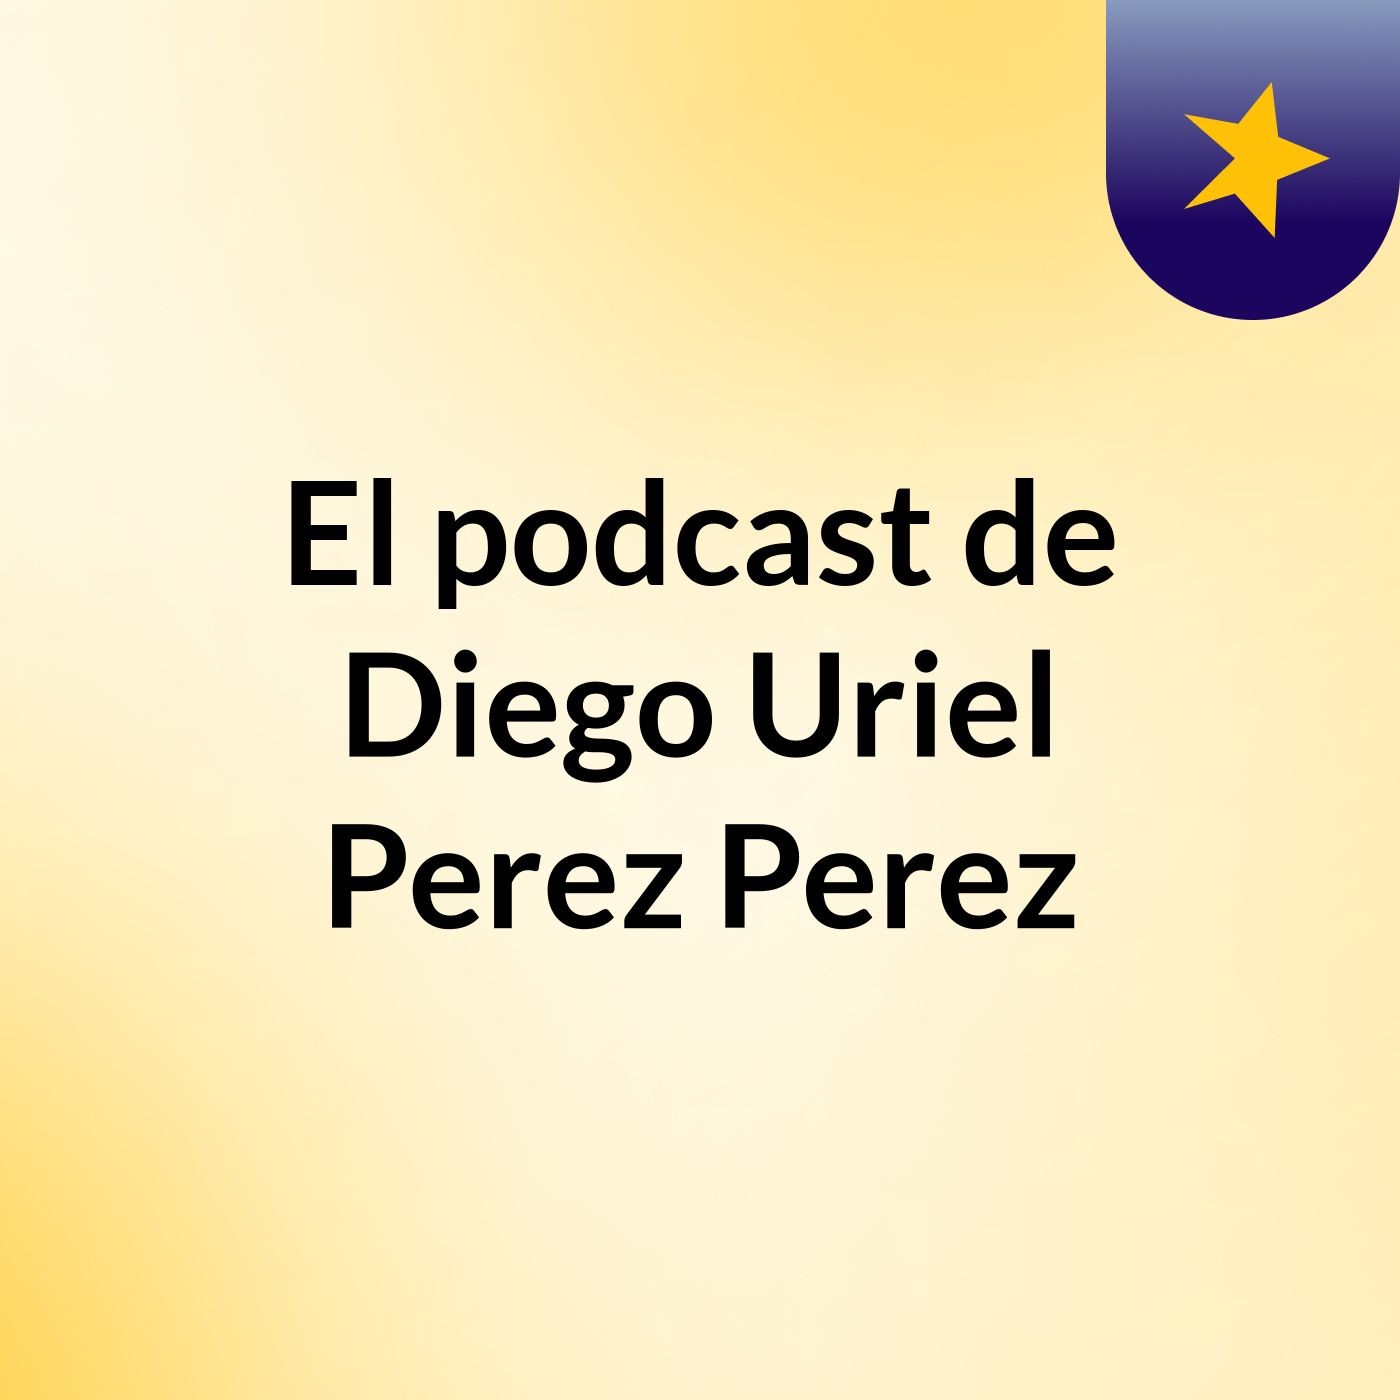 El podcast de Diego Uriel Perez Perez